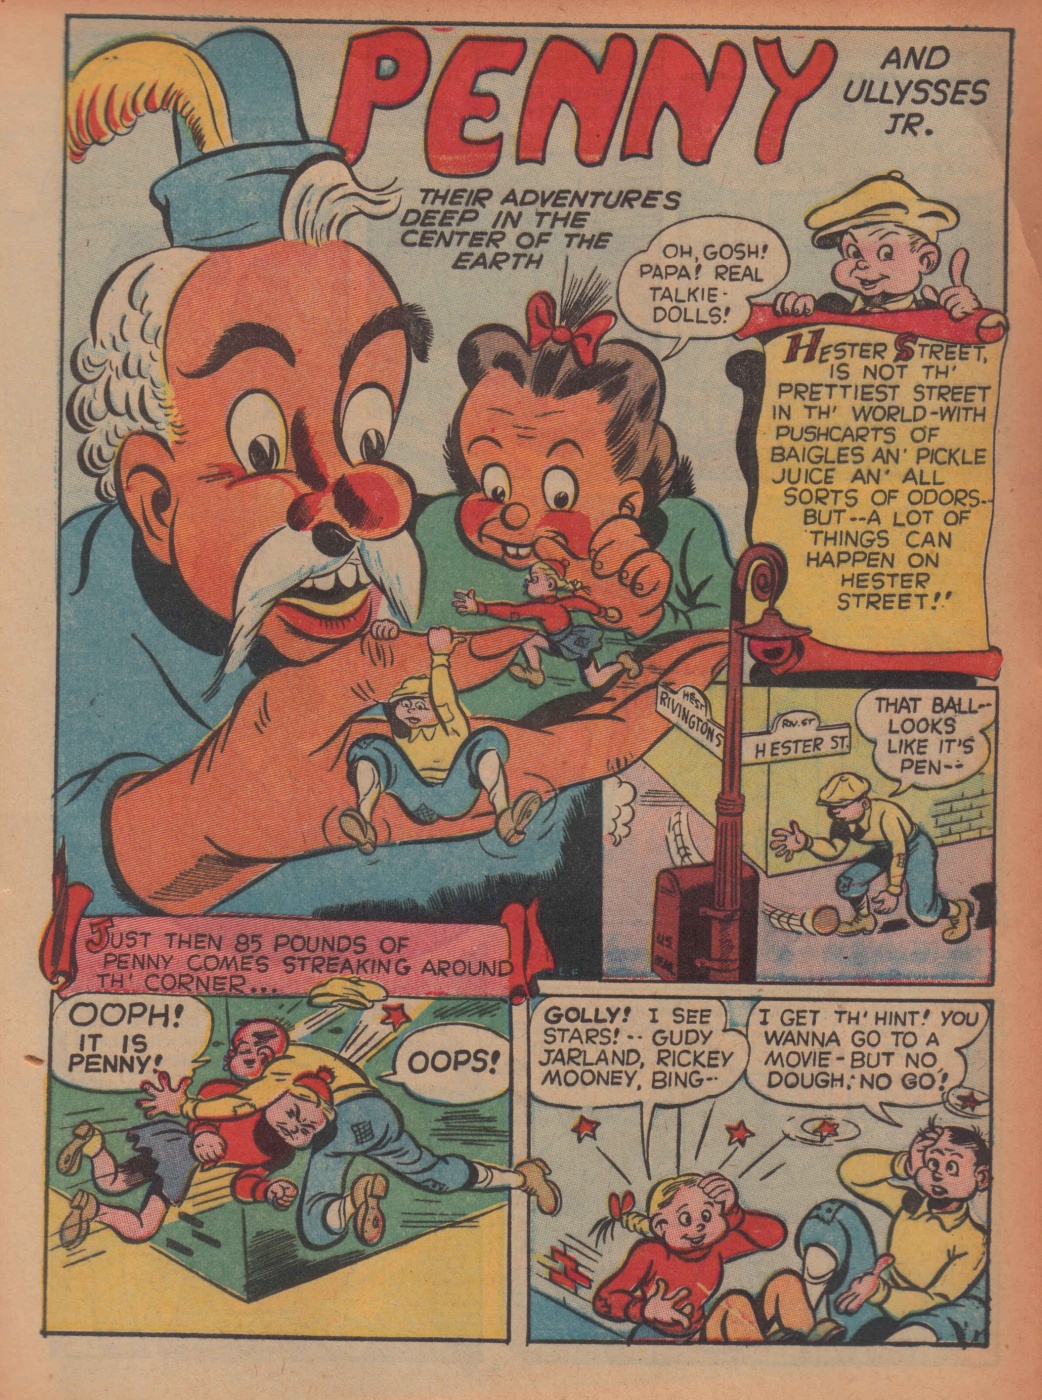 Super Dooper Funny Comics (24)